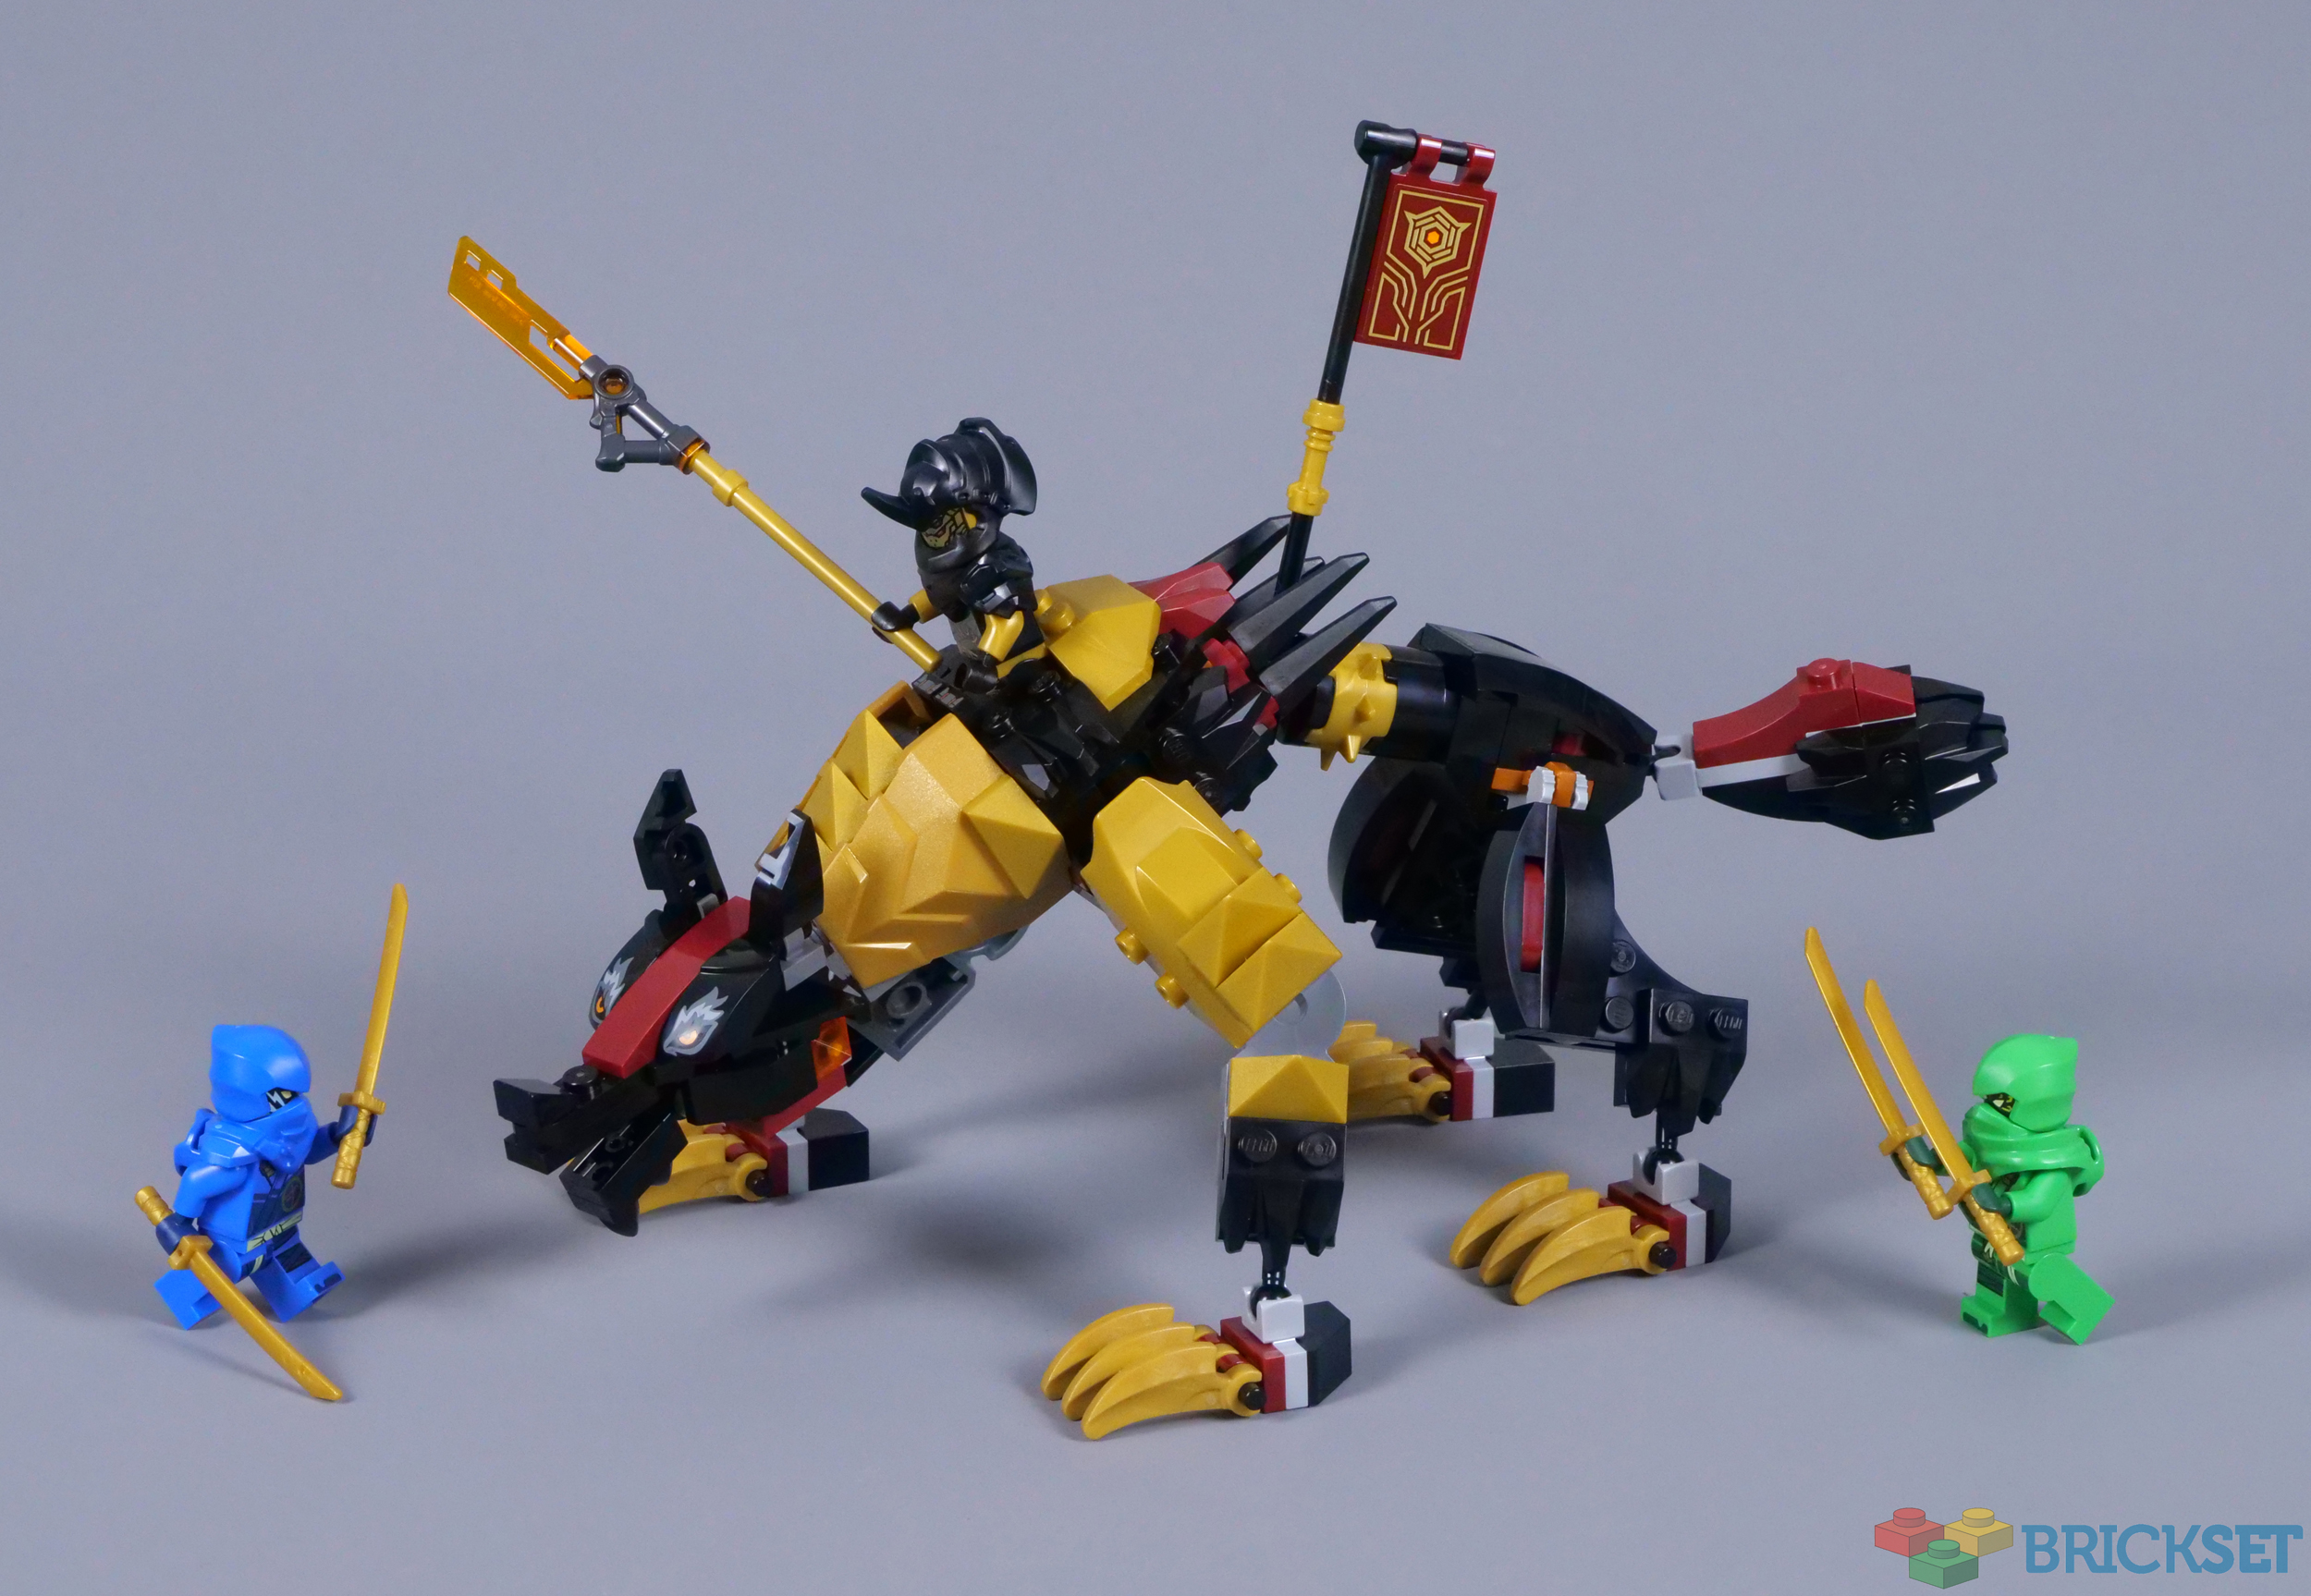 LEGO NINJAGO Imperium Dragon Hunter Hound Ninja Building Toy 71790